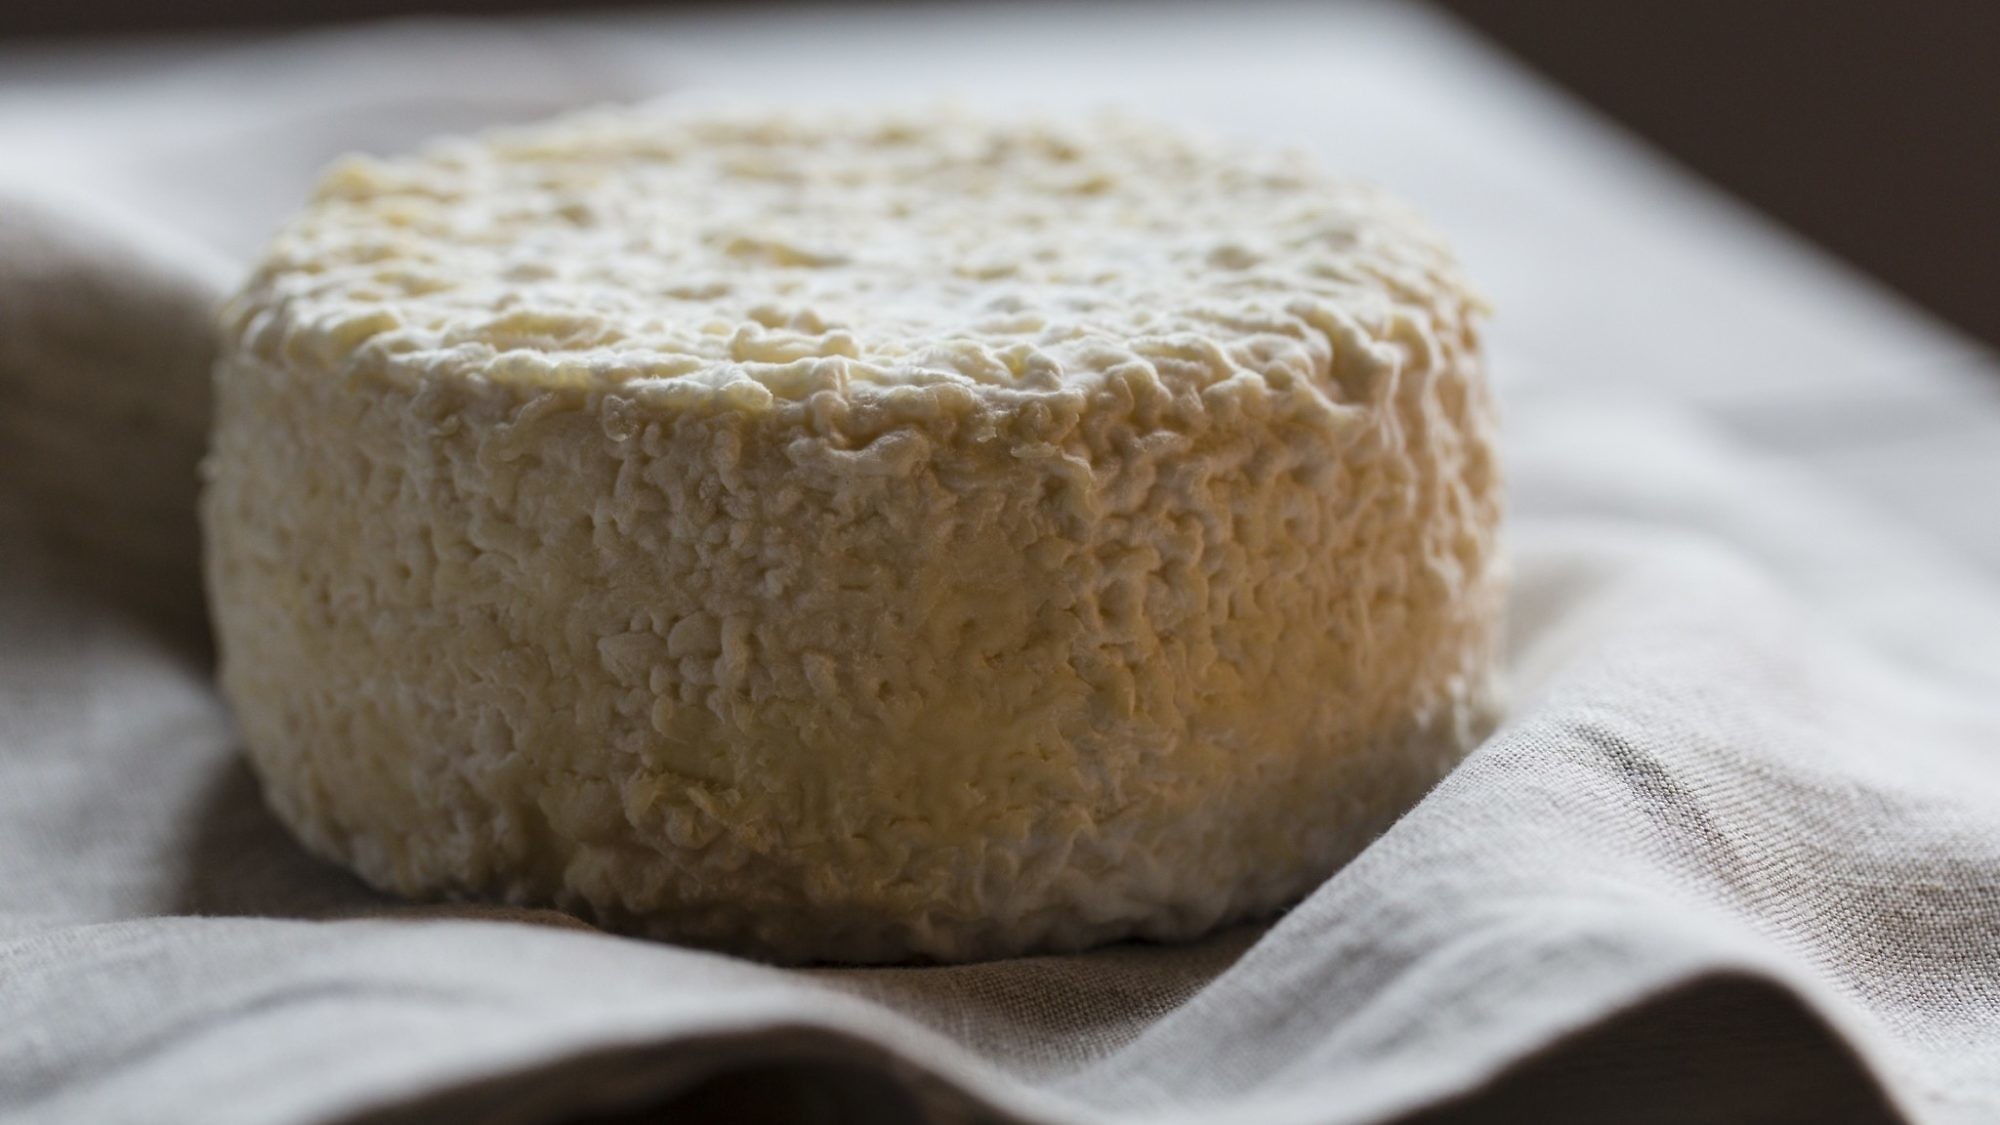 גבינה של קשינה לאגו סקורו.  צילום : Maurizio vezzoli